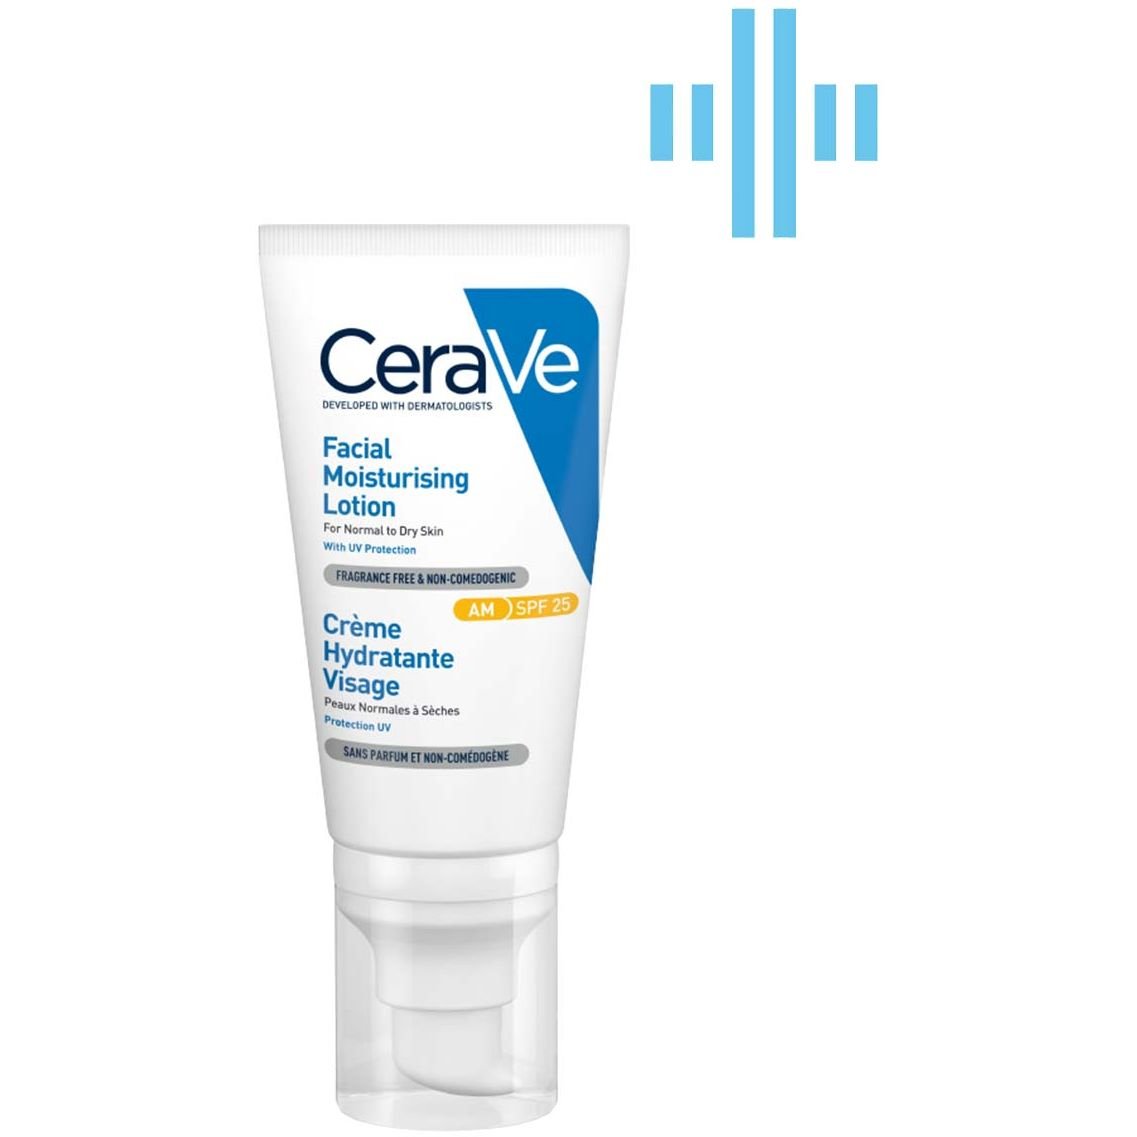 Дневной увлажняющий крем CeraVe для нормальной и сухой кожи лица с SPF 30, 52 мл (MB525400) - фото 2